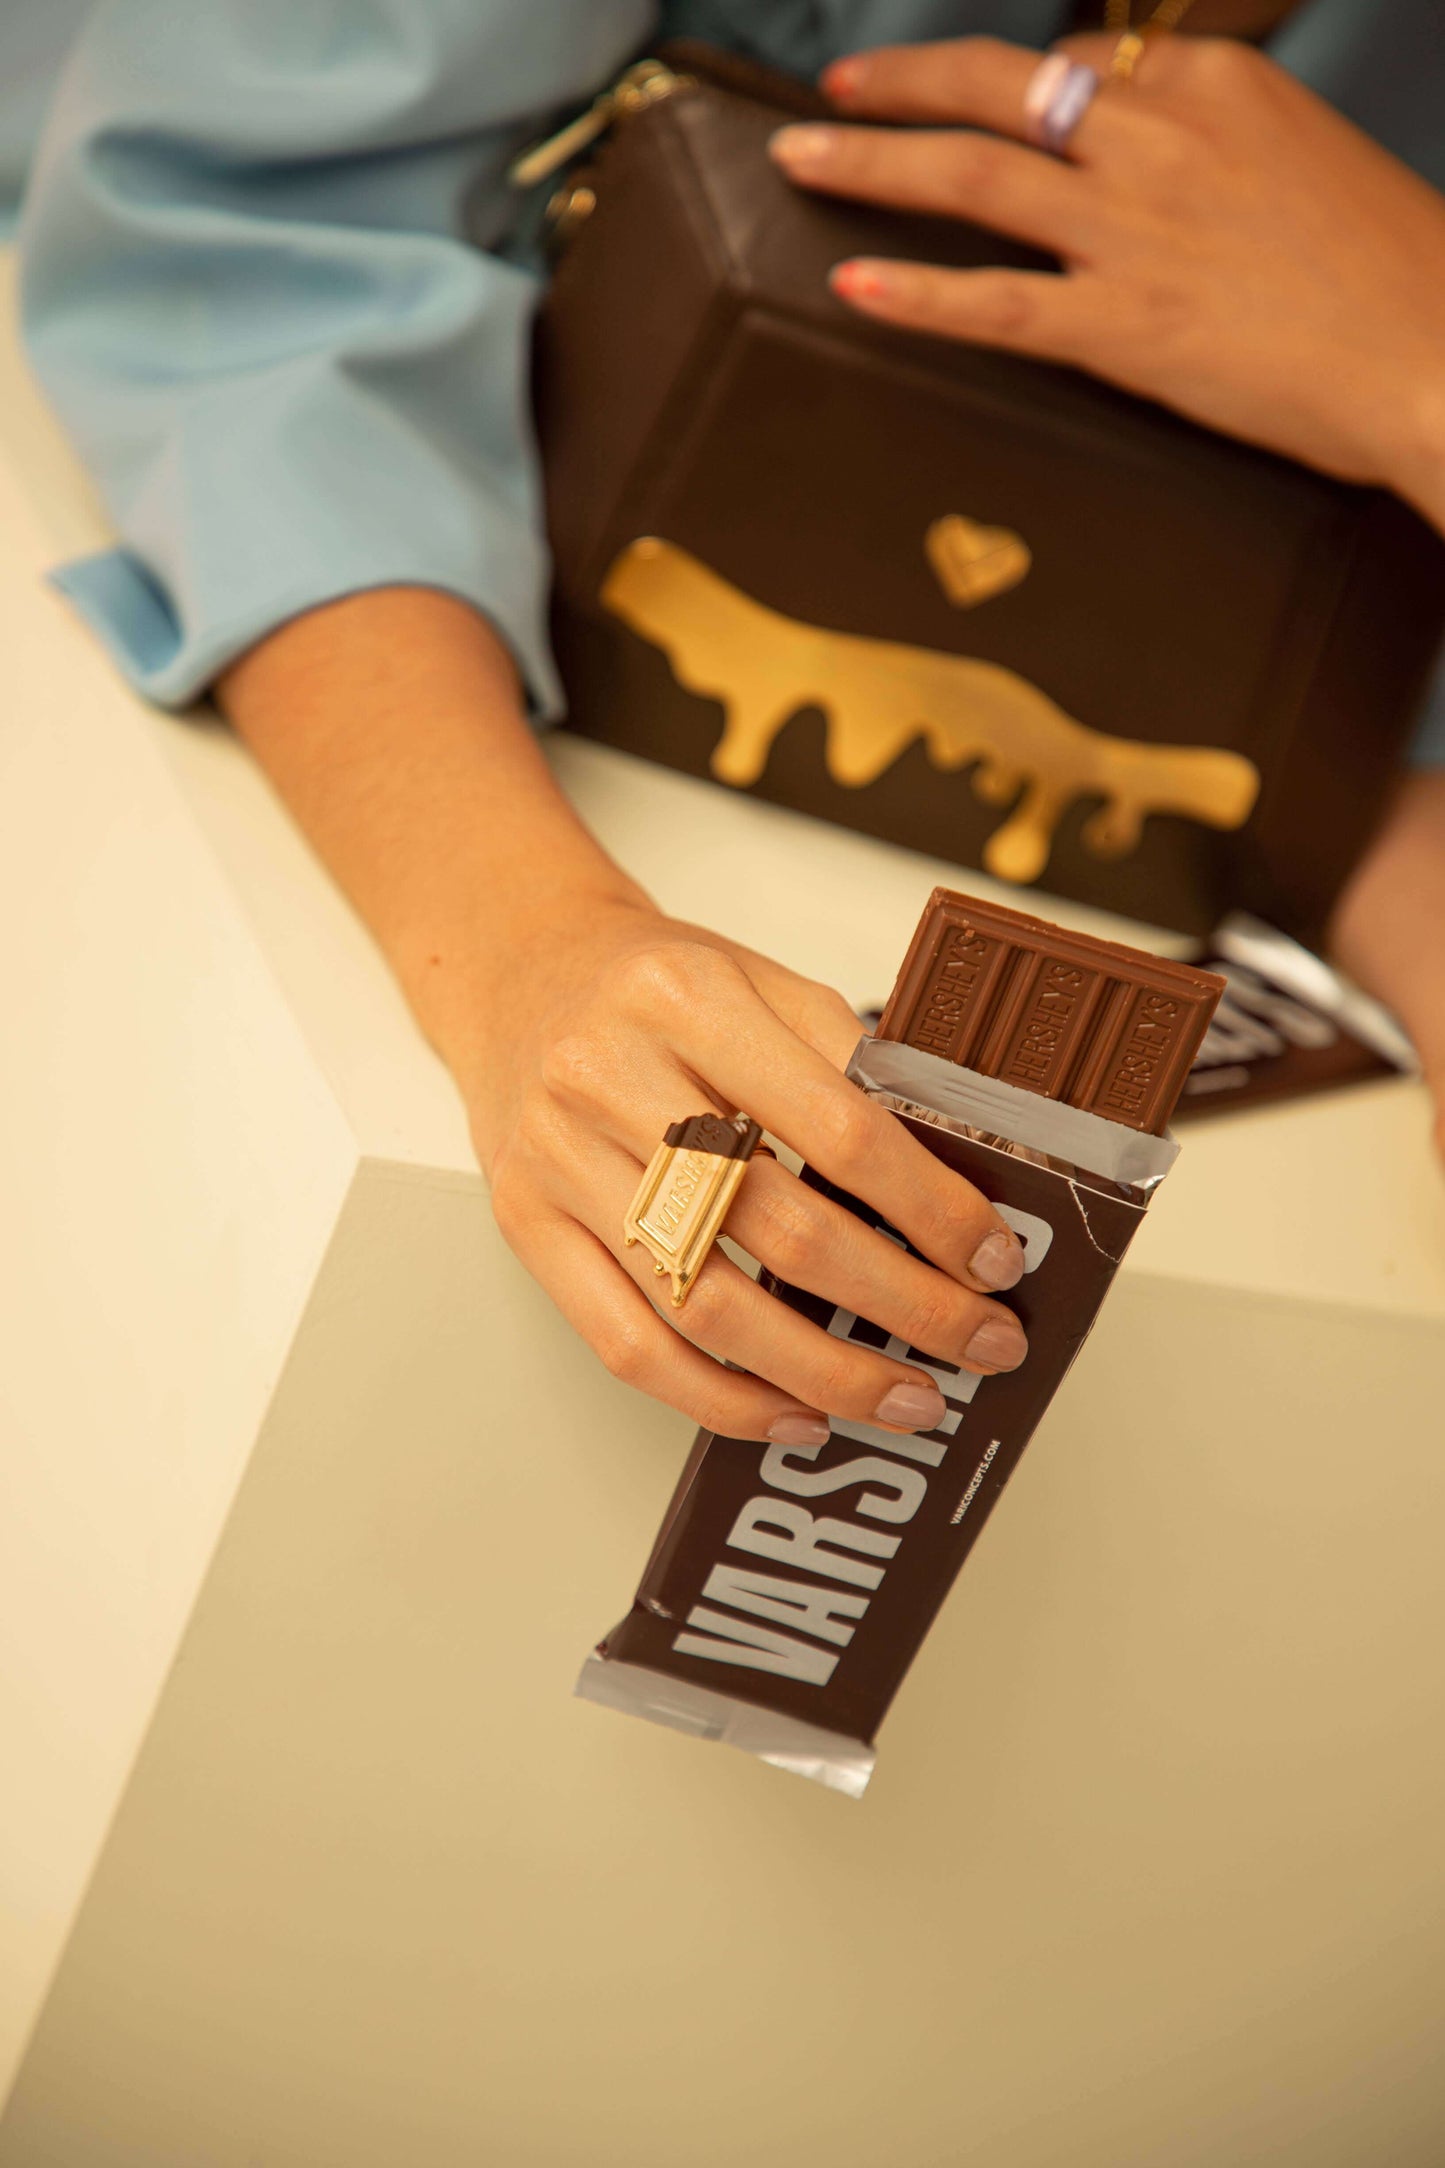 Anillo Chocolate VAR SHEY´S- Golden Treats